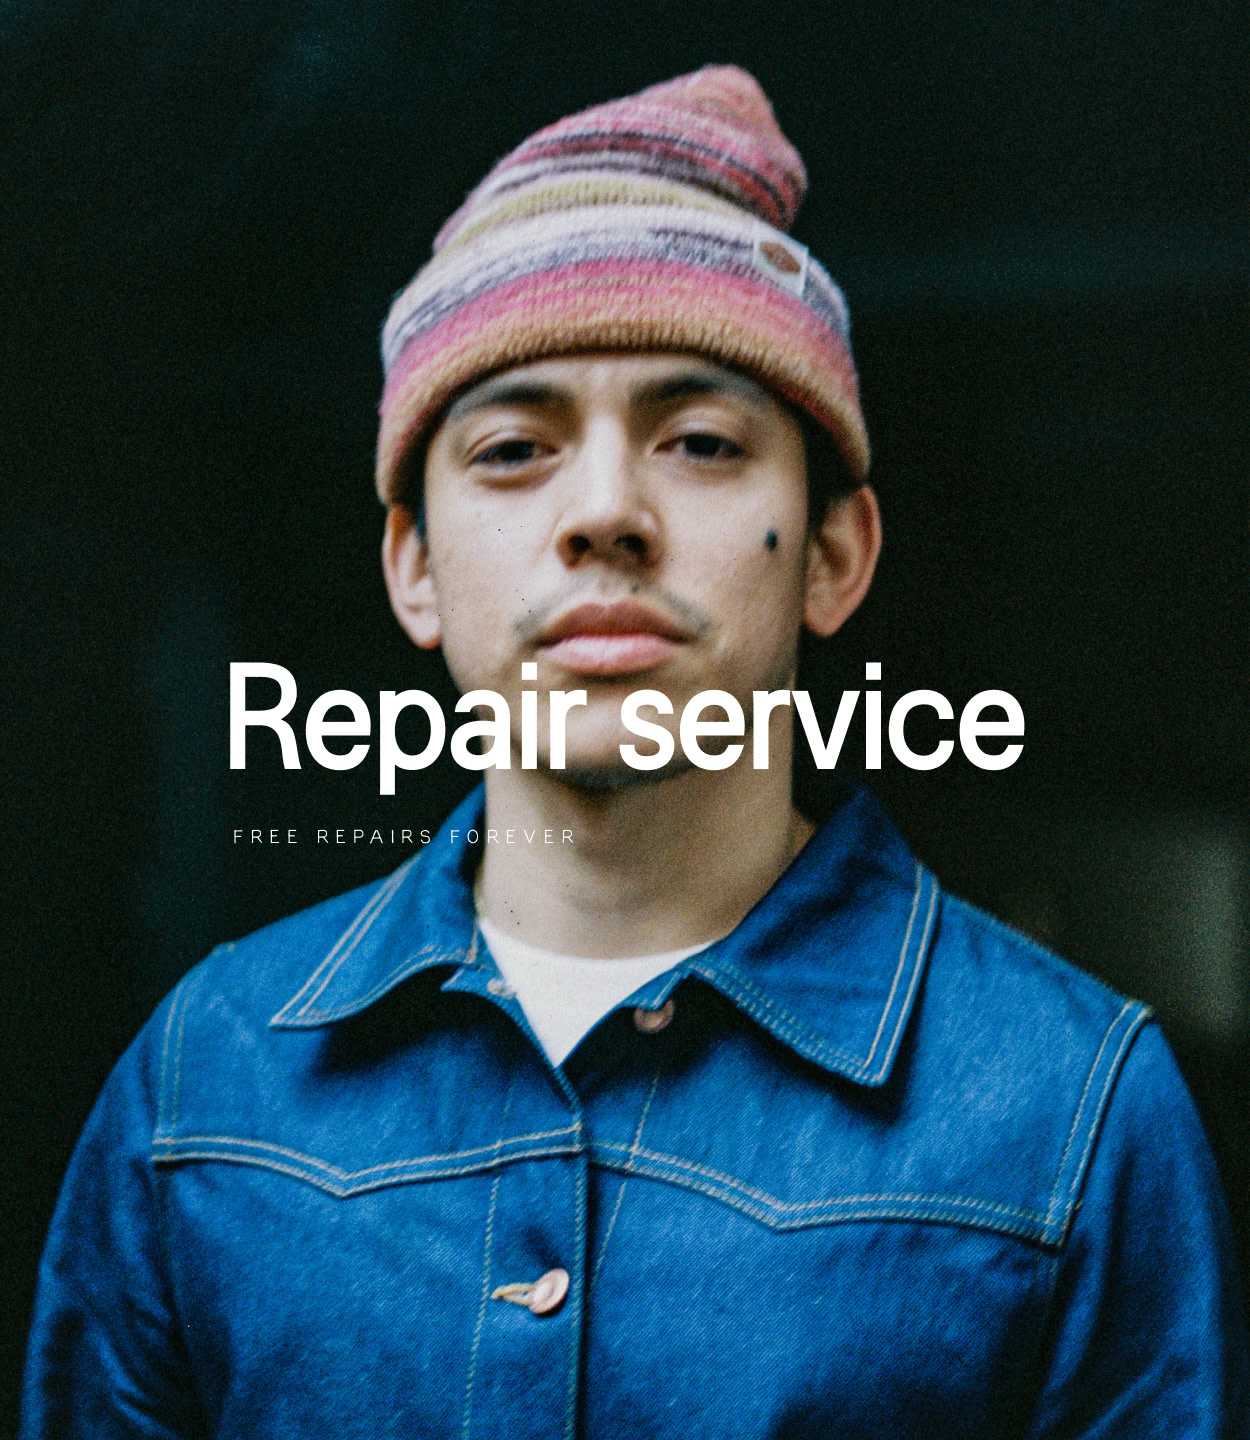 Repair Service - Free Repairs Forever